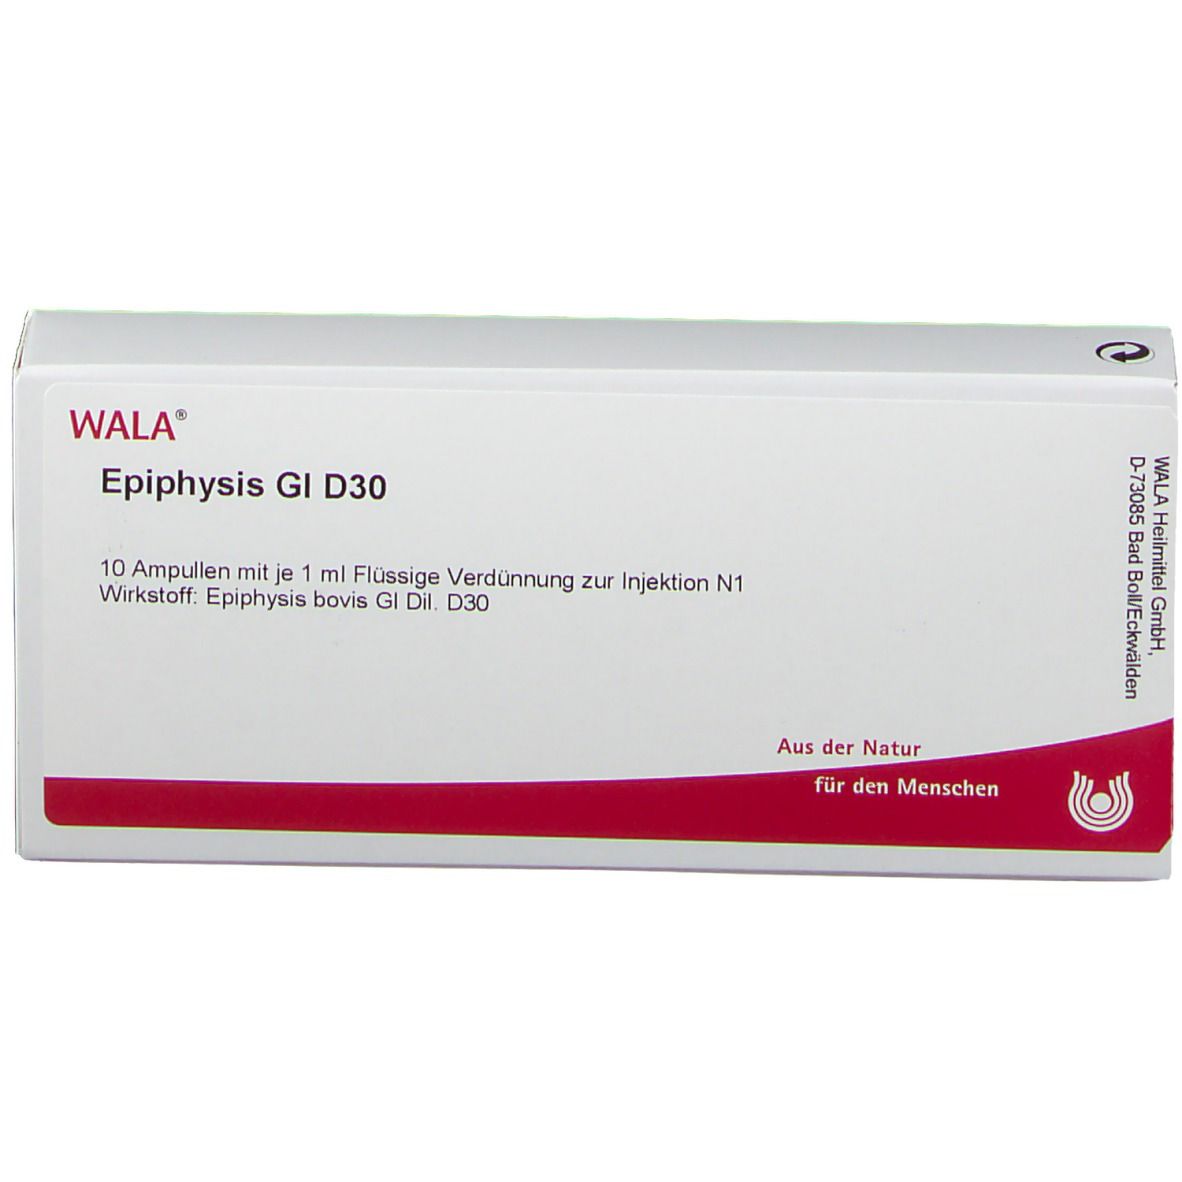 WALA® Epiphysis Gl D 30 Ampullen